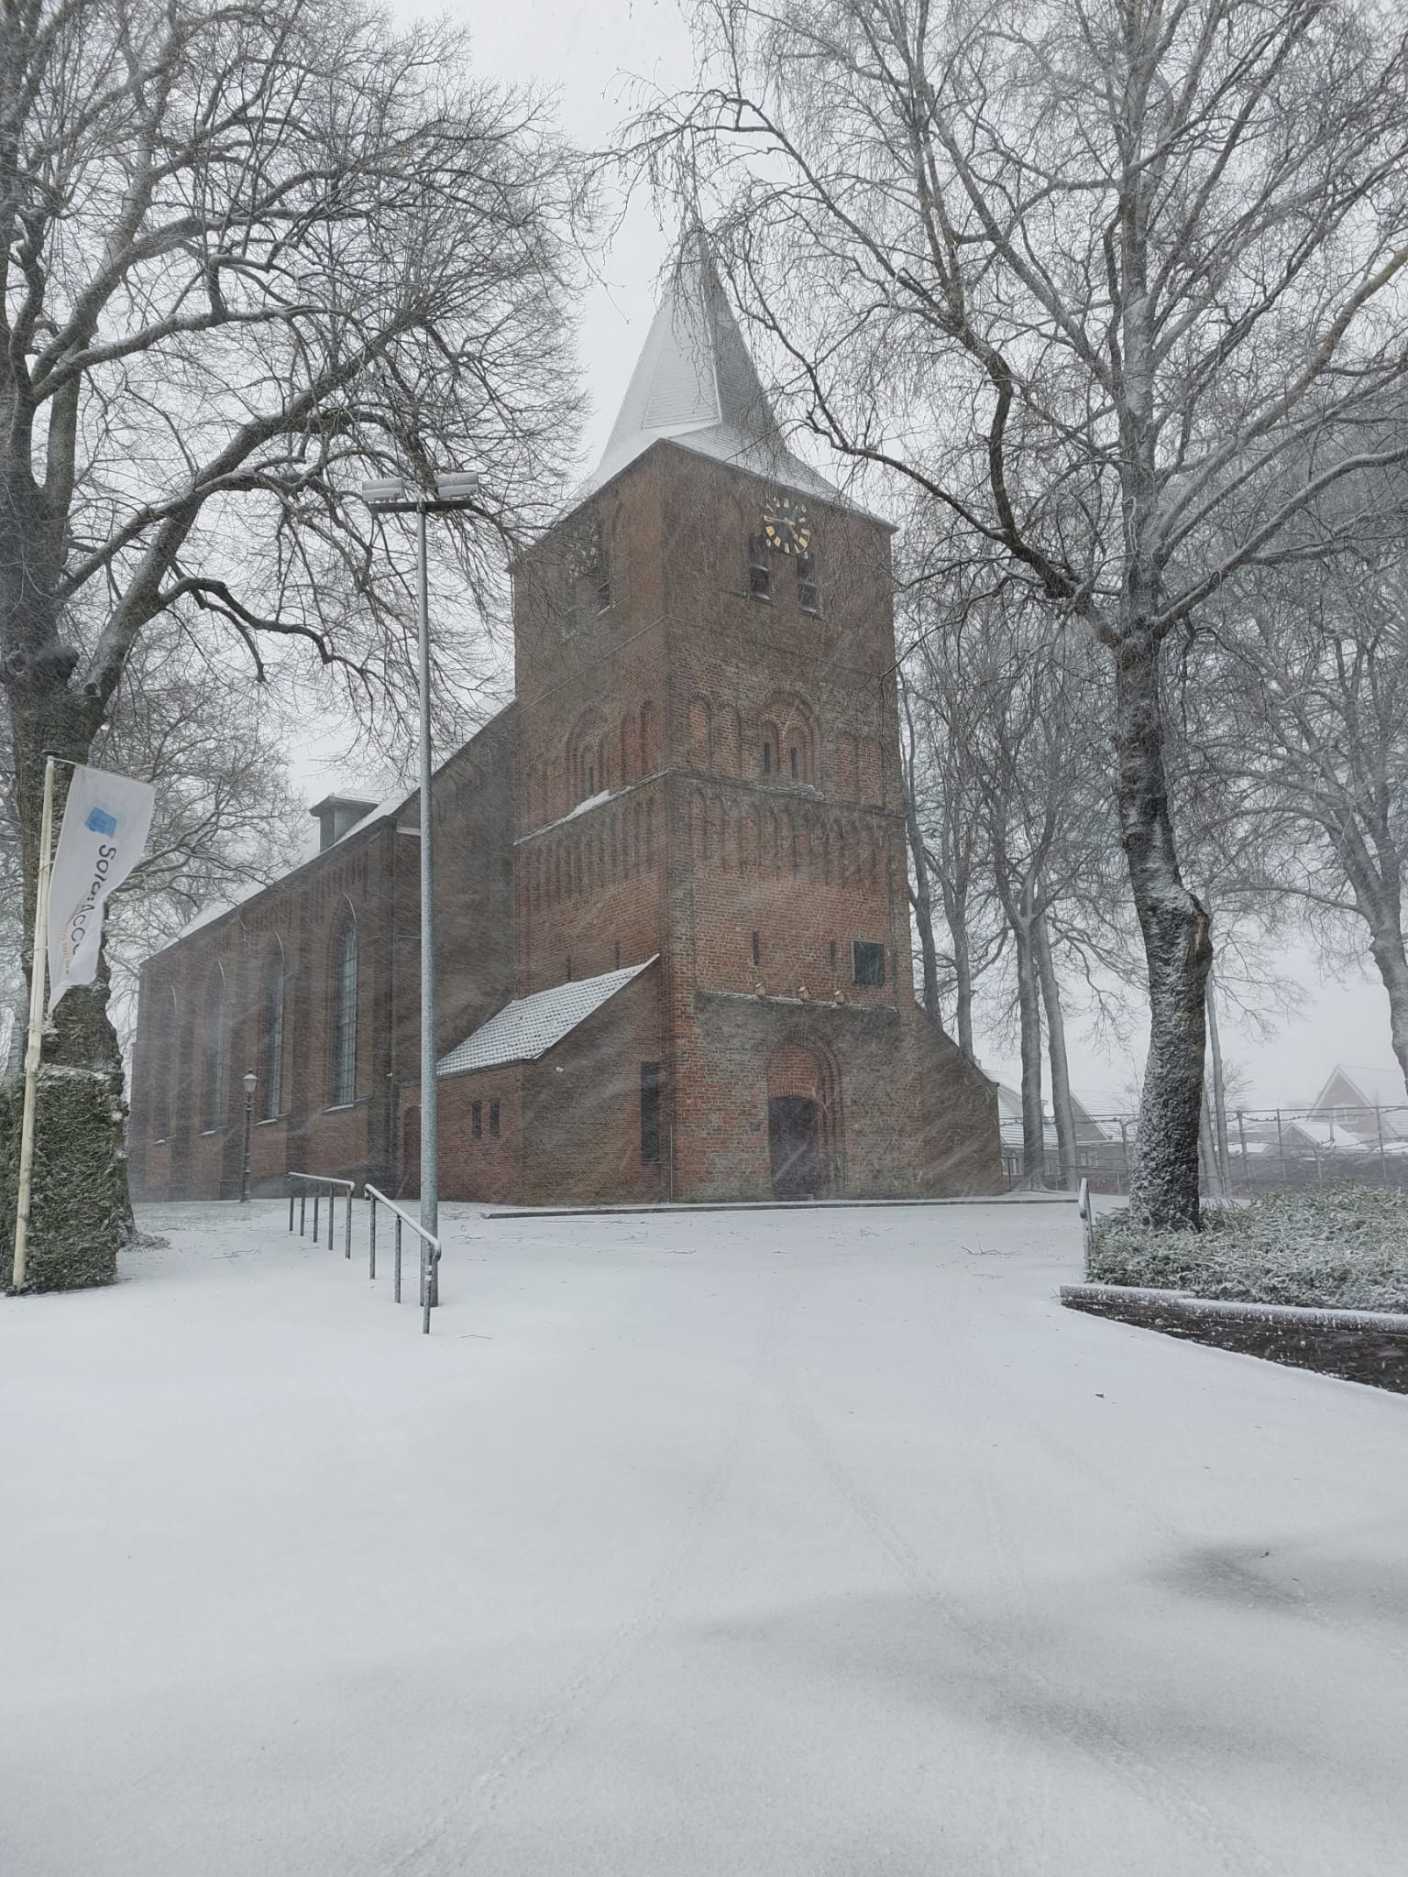 Foto gemaakt door Erik Bornkhorst - Garderen - Garderen op de Veluwe in de sneeuw.